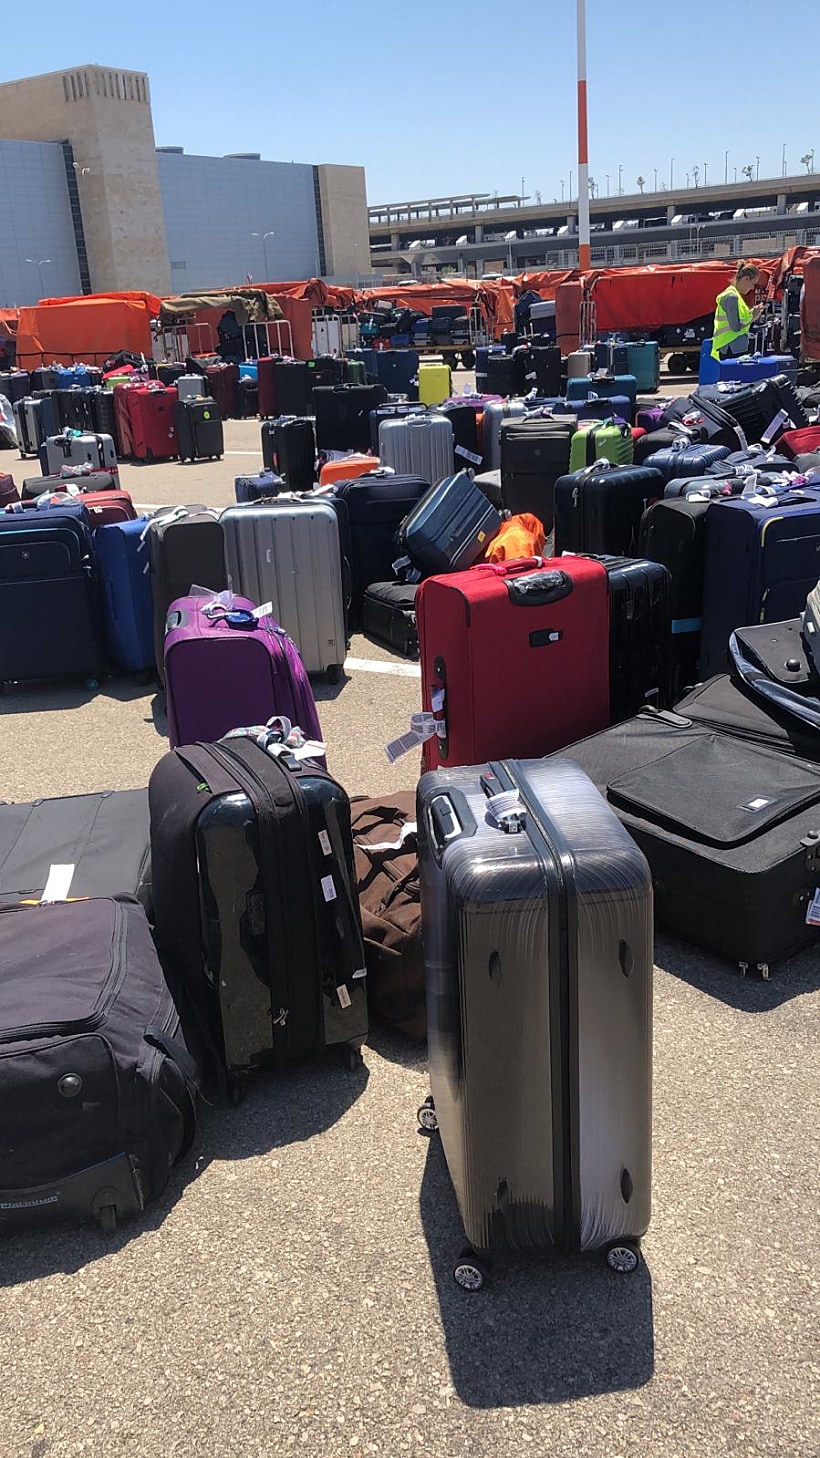 מאות מזוודות ממתינות למיון